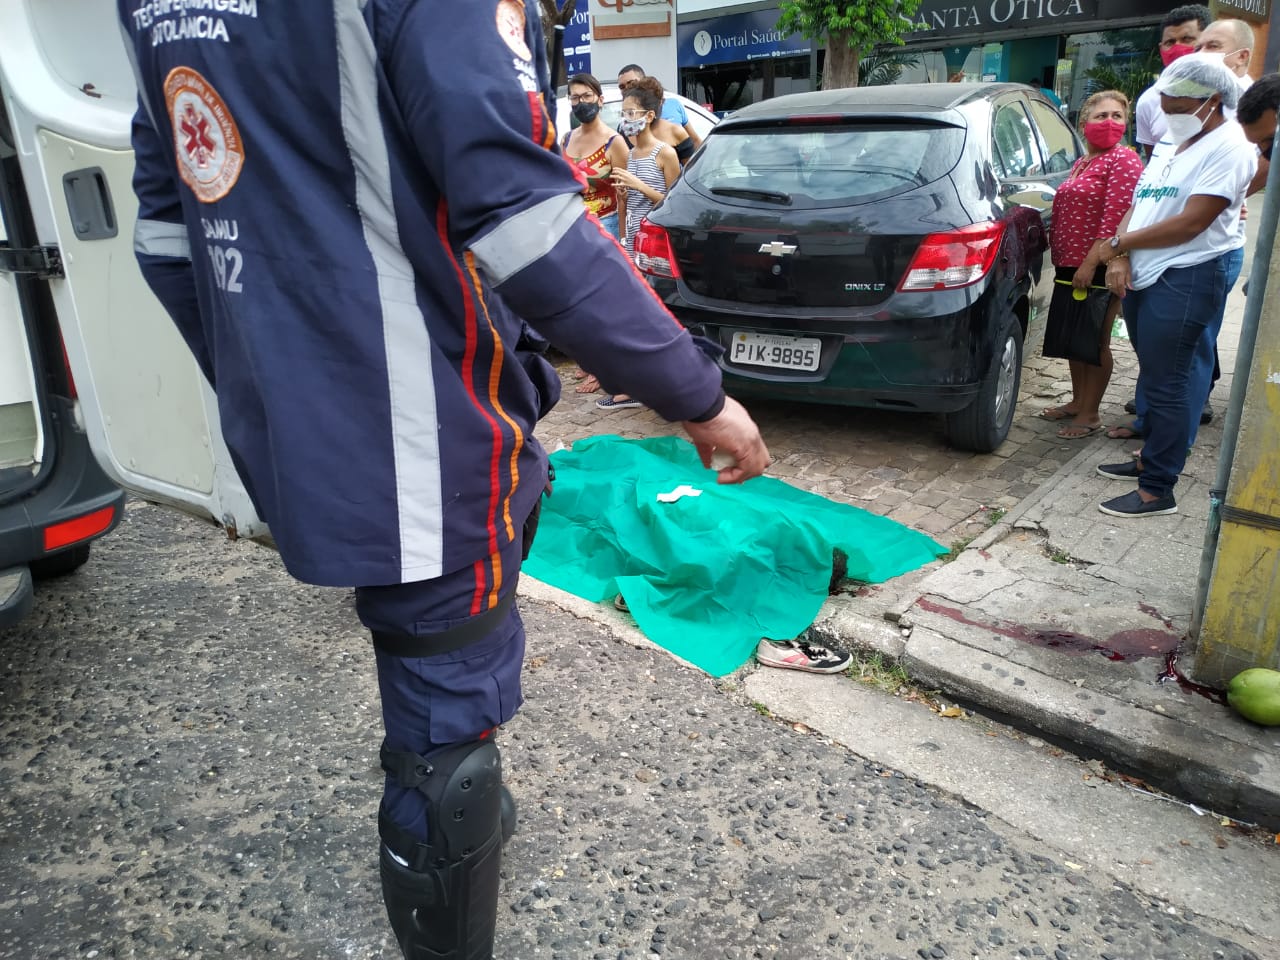 Profissionais do SAMU ainda tentaram reanimar a vítima (Foto: Matheus Oliveira/ Portal Meio Norte)